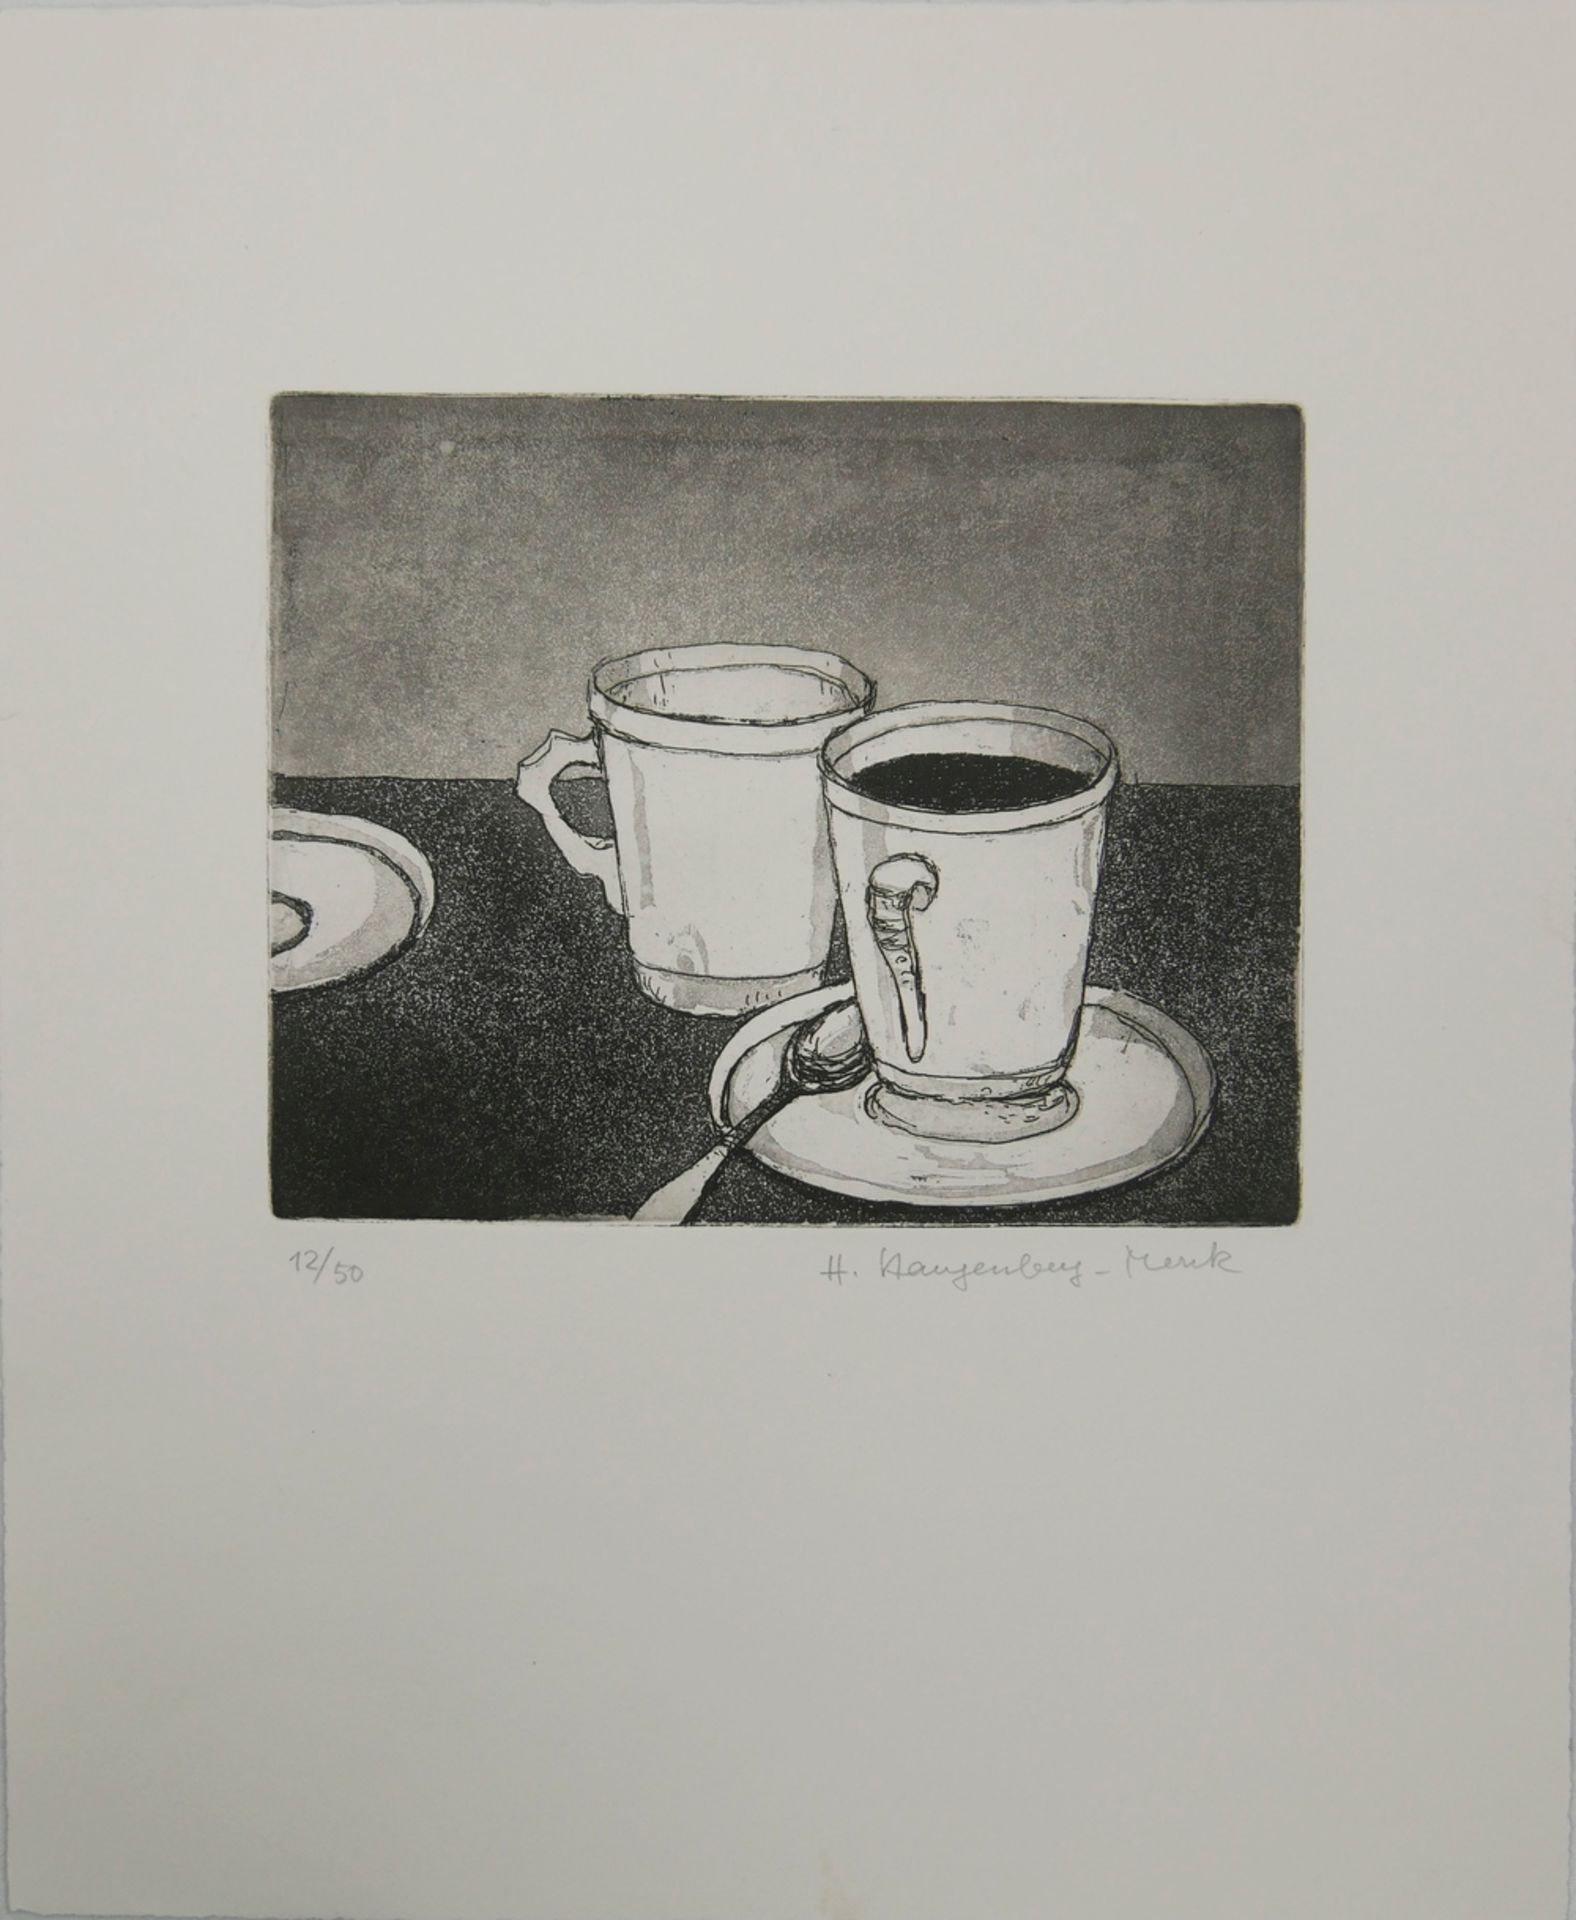 H. Klangenberg- Menk, Druckgrafik "Kaffeepause" Blatt Nr. 12/50, handsigniert, Blattmaße: Höhe ca.